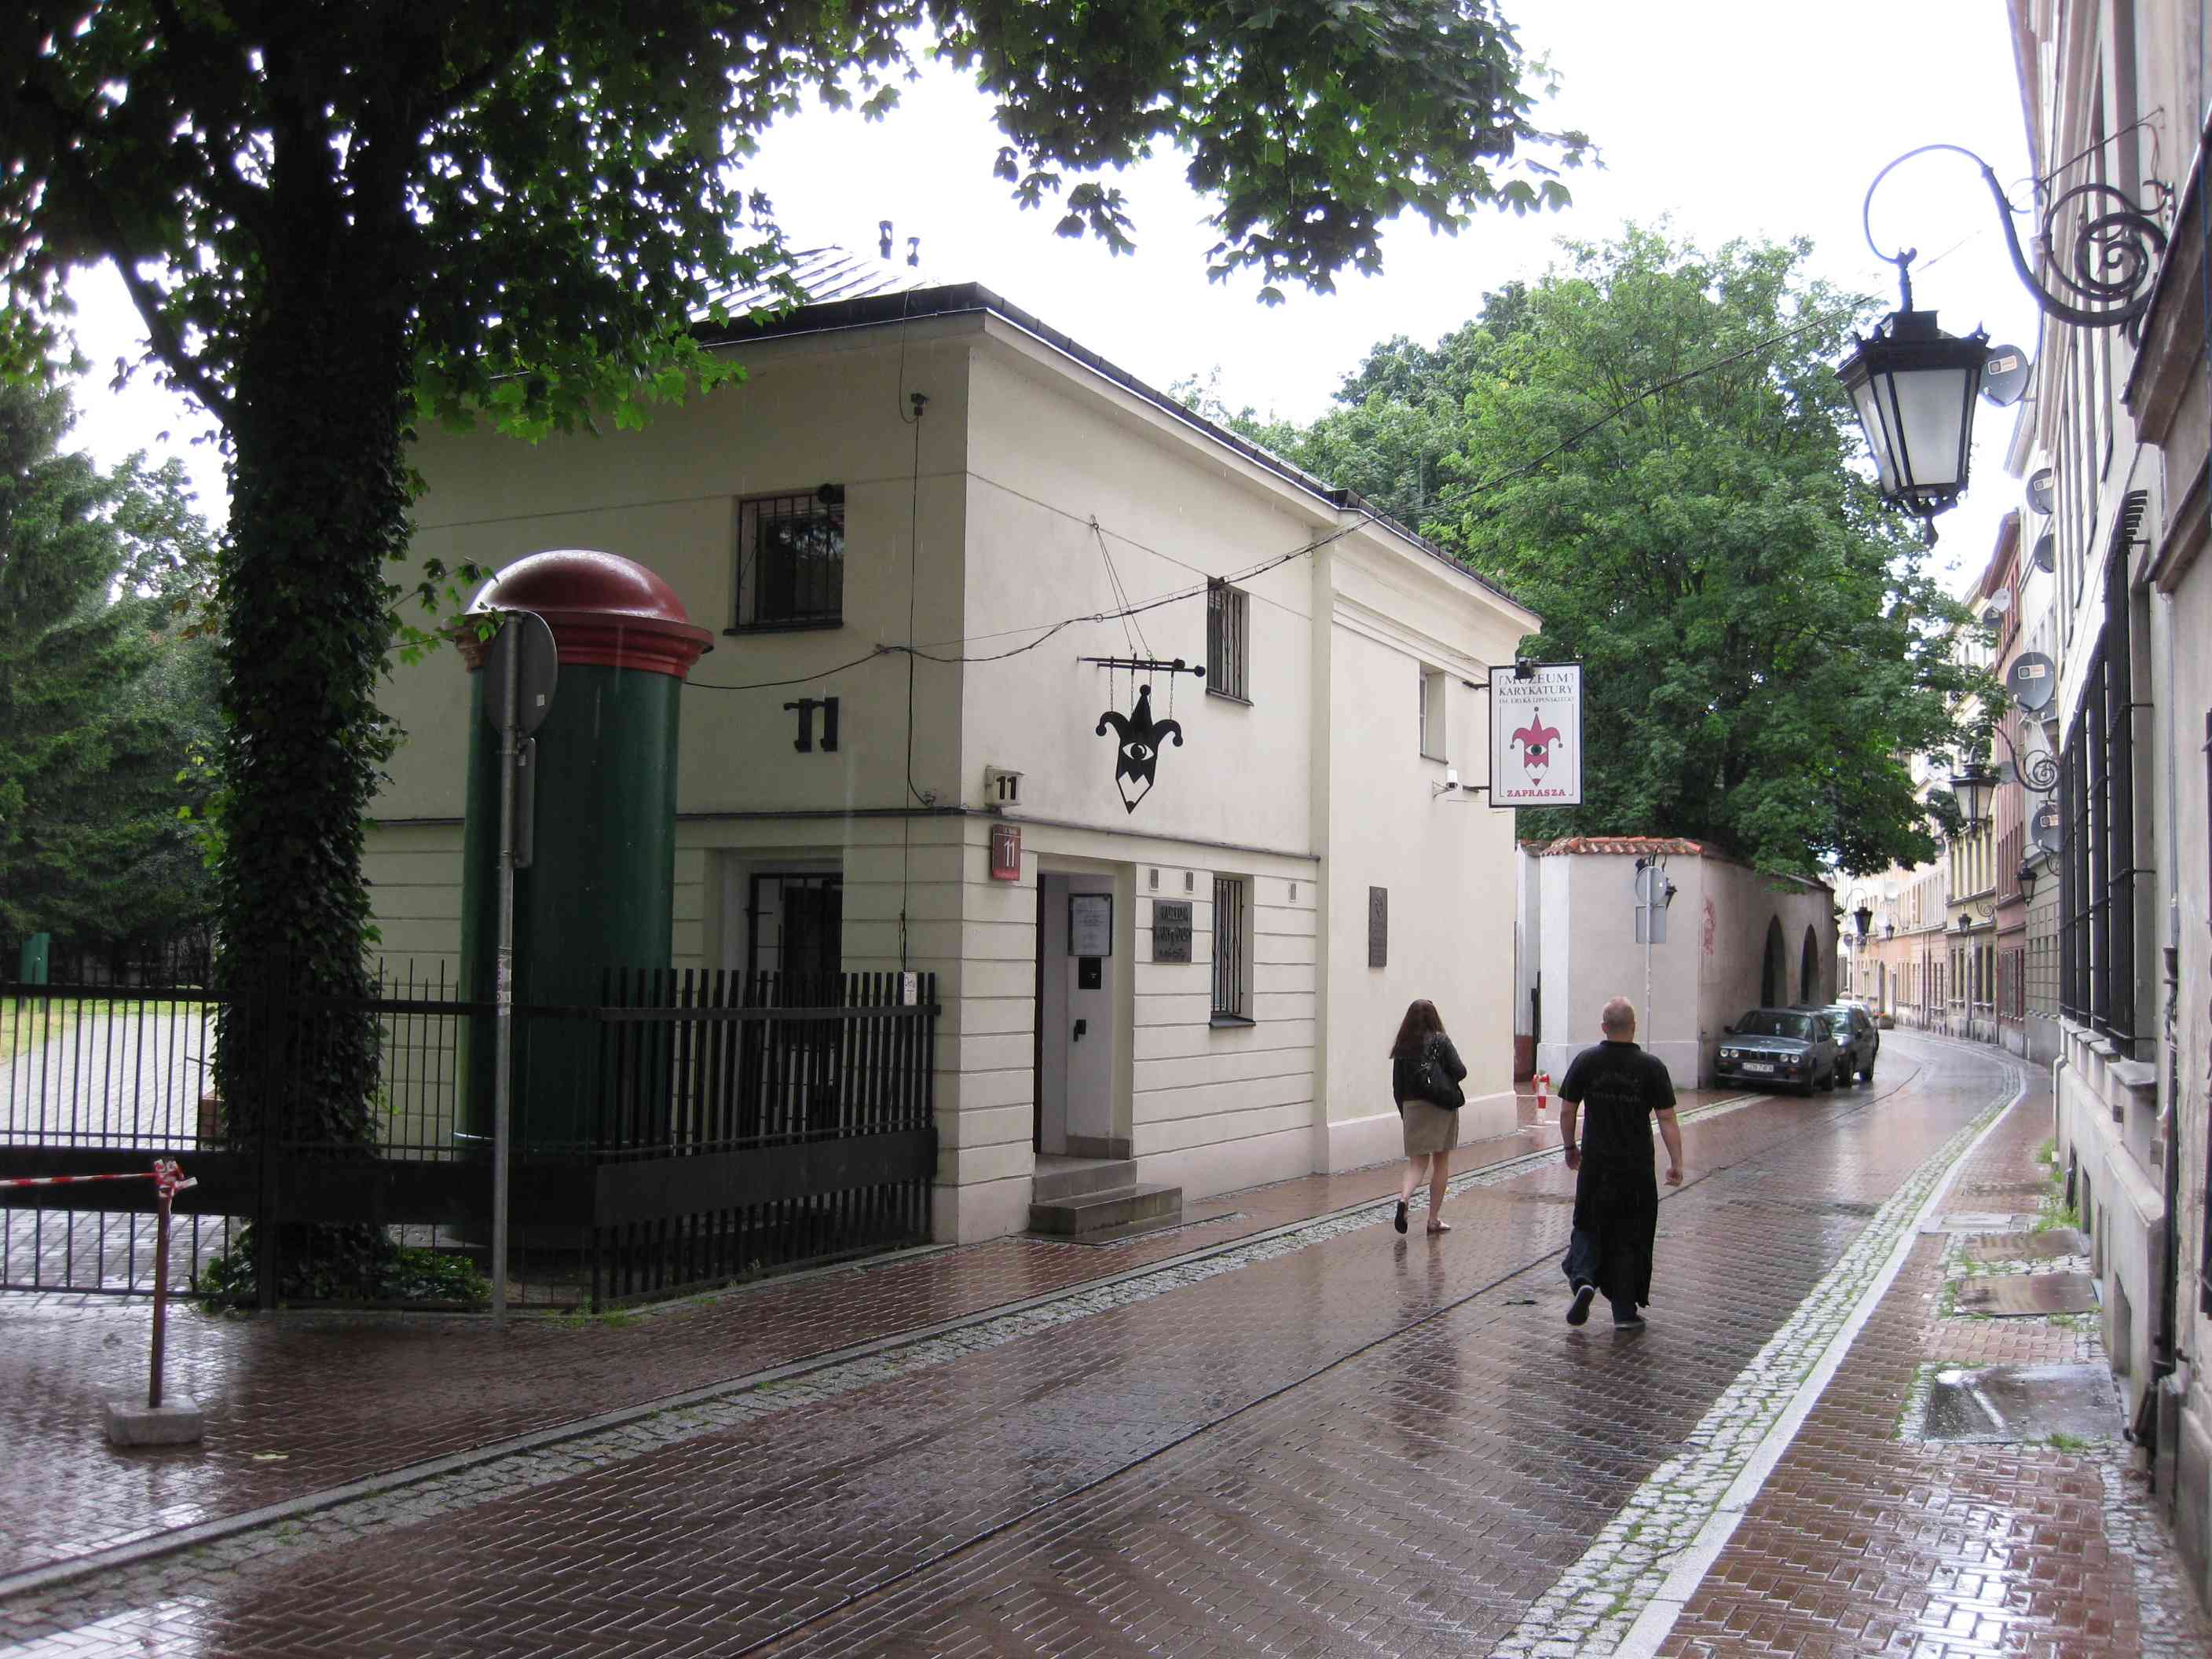 Muzeum Karykatury in Warschau, Polen